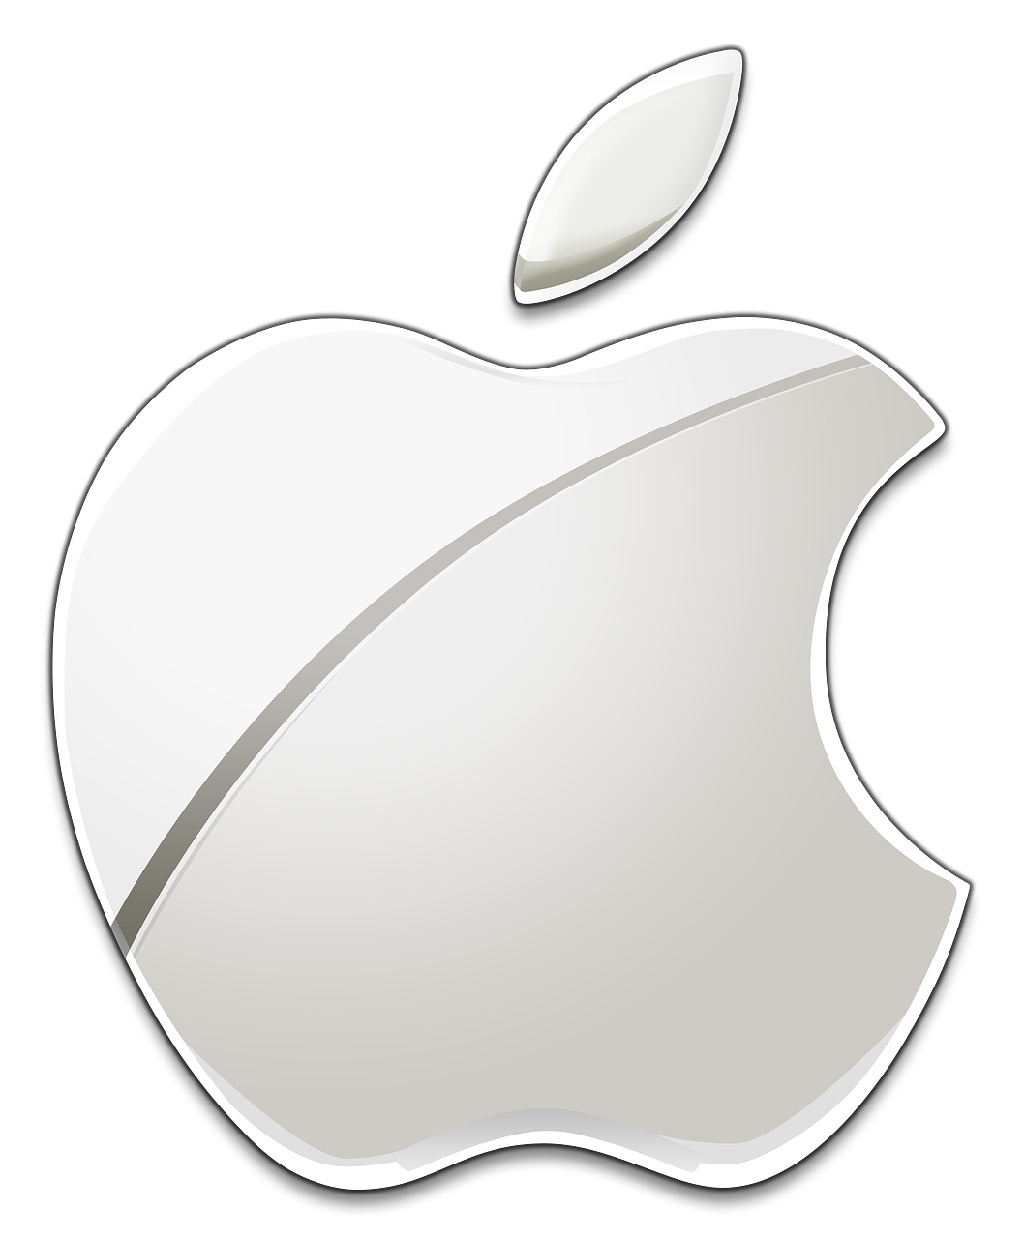 Nhãn hiệu Apple chính thức là bản gốc của thương hiệu. Xem hình ảnh này để hiểu tầm quan trọng và sự độc đáo của biểu tượng Apple đối với ngành công nghiệp công nghệ.